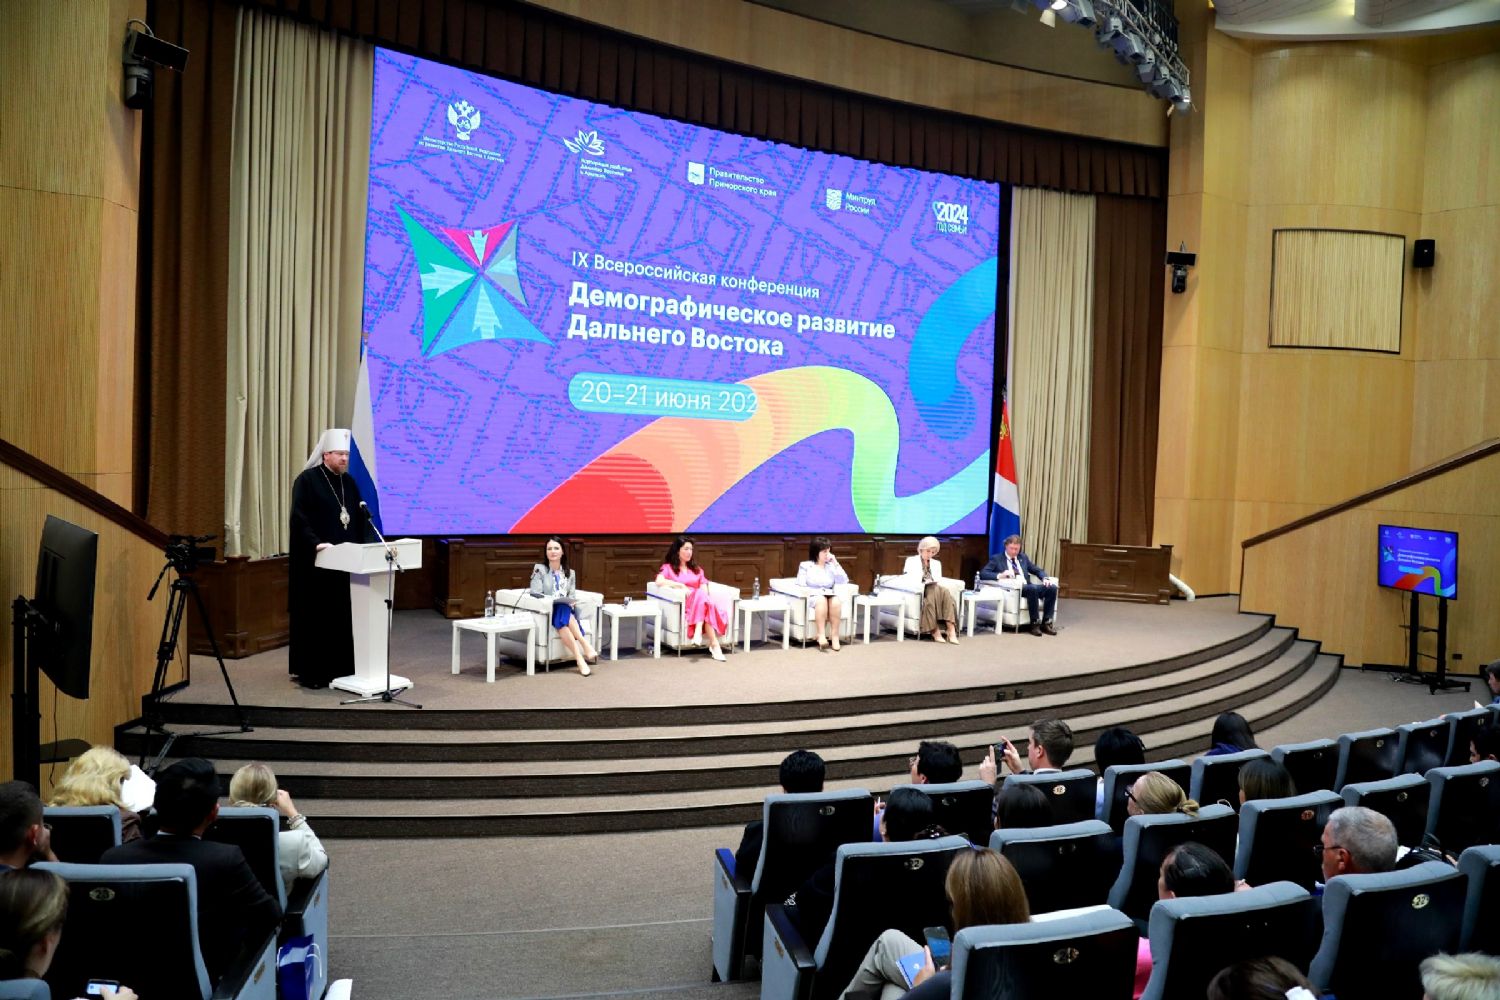 Митрополит Владимир выступил с докладом на IX Всероссийской конференции «Демографическое развитие Дальнего Востока»